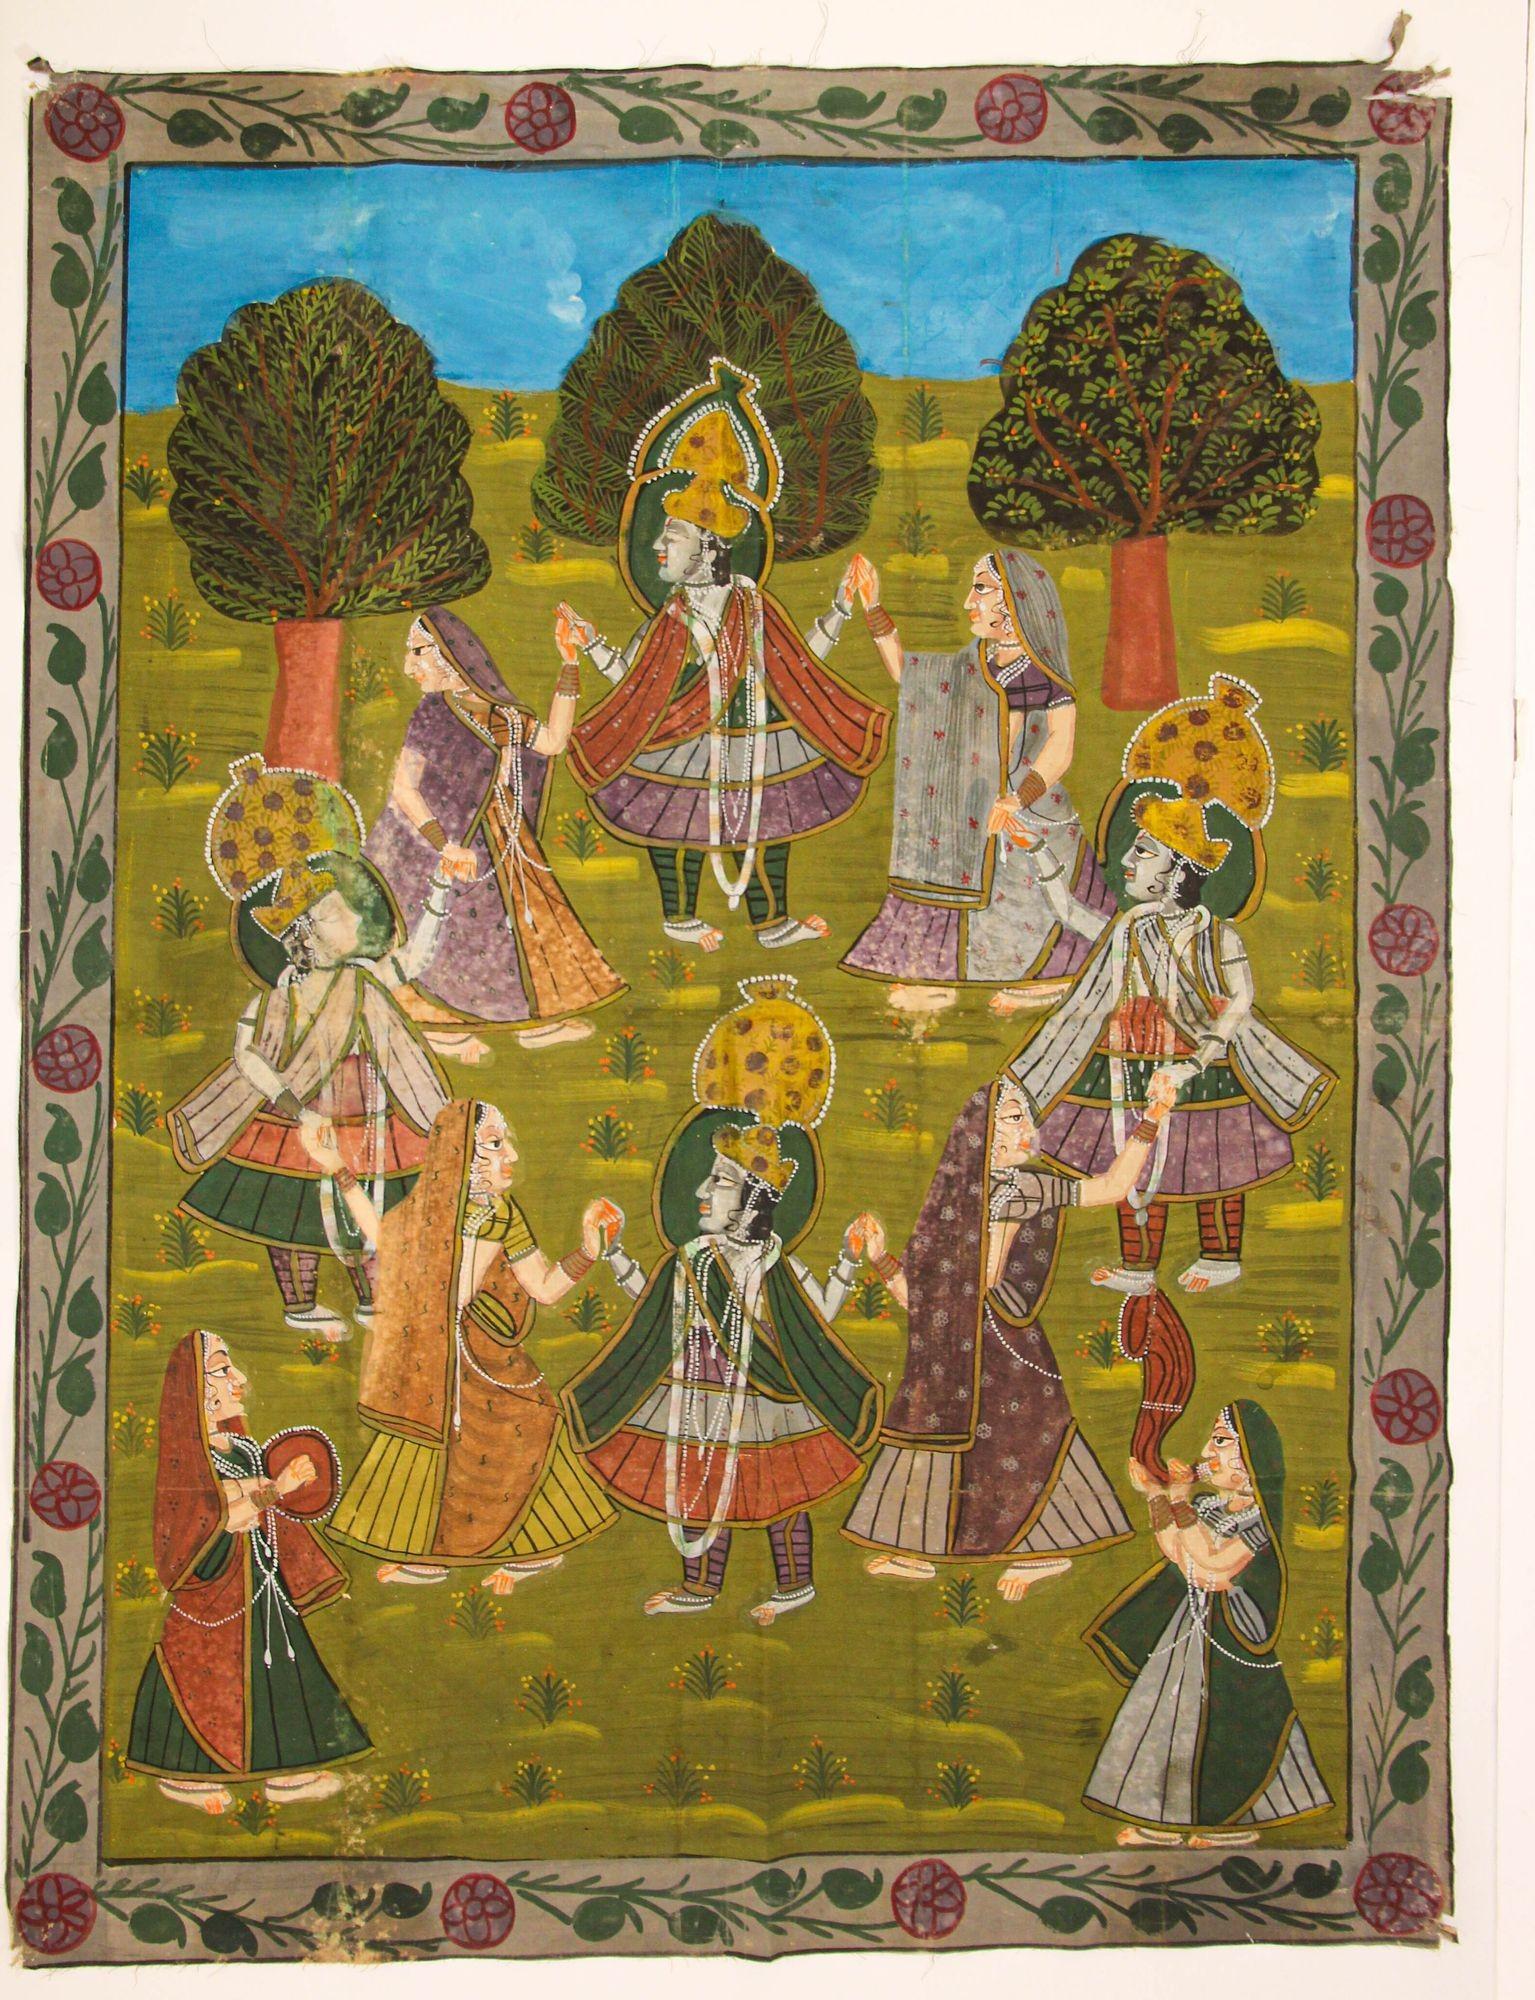 Grande peinture Vintage Pichhavai de Krishna avec des femmes Gopis dansant.
Pichhavai coloré peint à la main sur un tissu en coton, vers 1940, représentant une scène de la vie de Krishna, dans un jardin.
Peinture Pichhavai unique en son genre